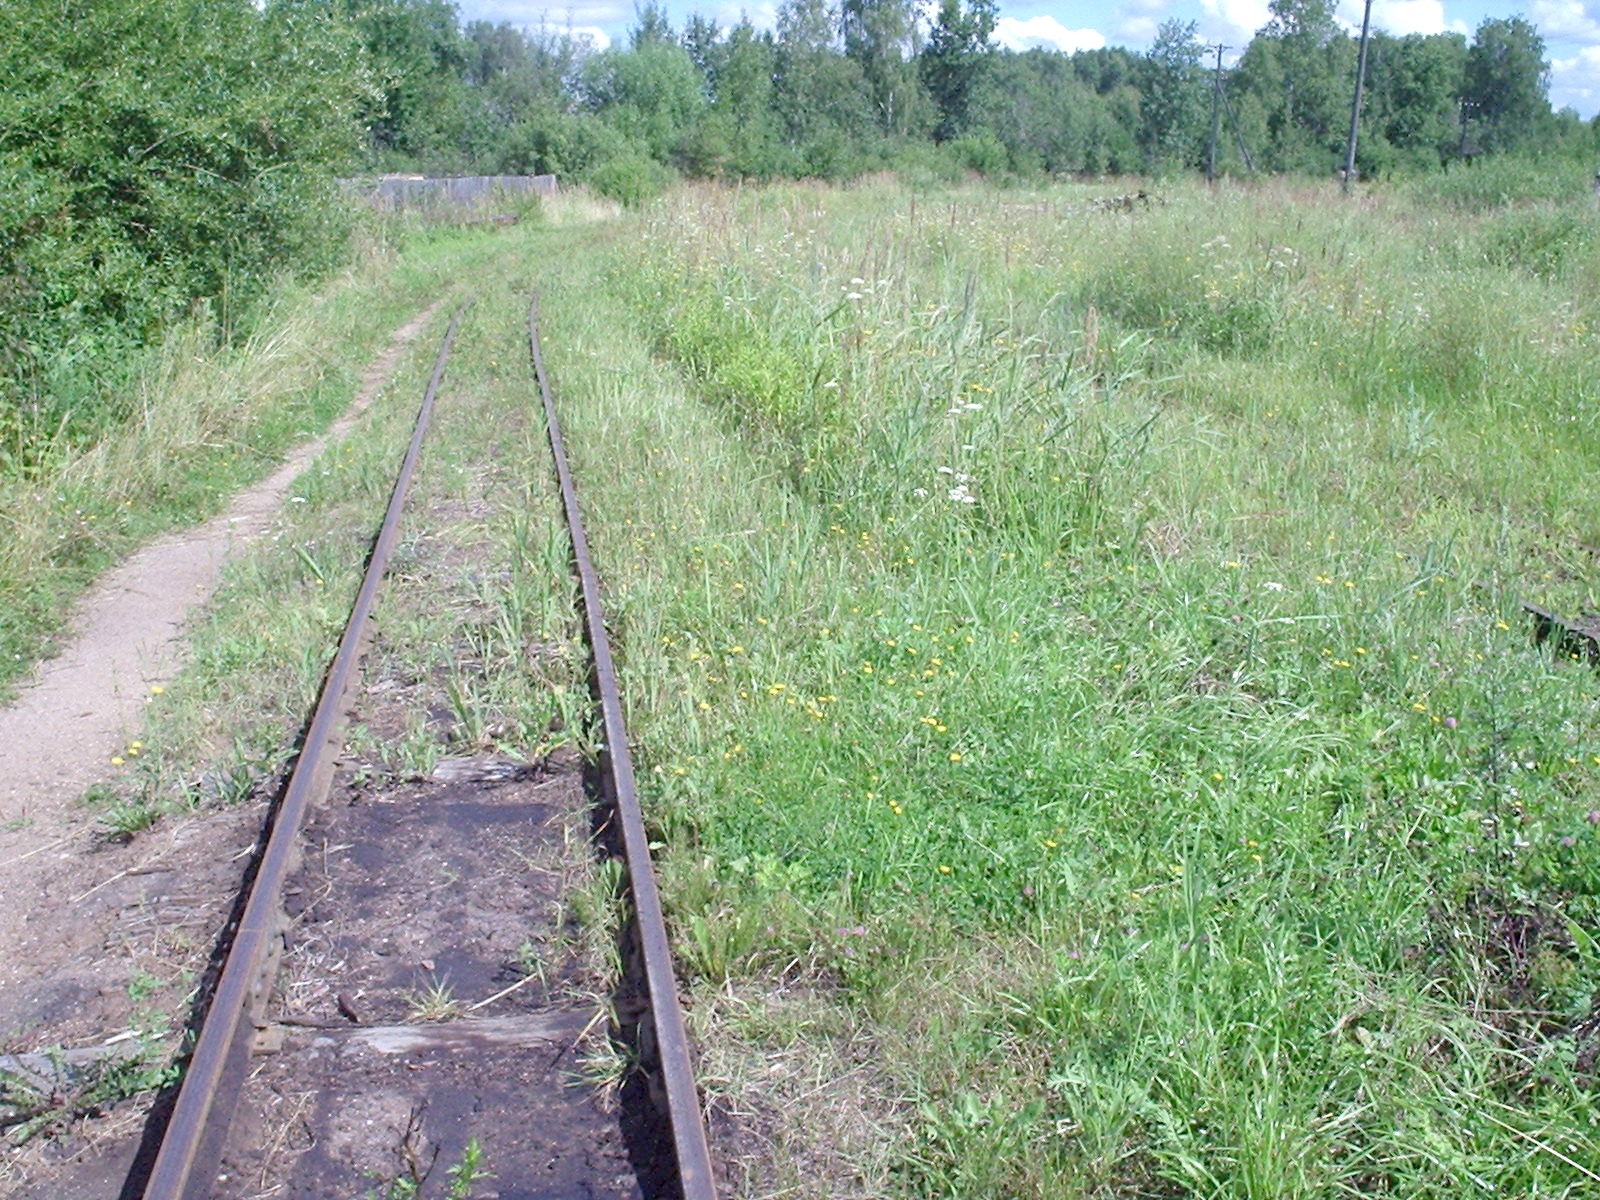 Узкоколейная железная дорога Васильевского предприятия промышленного железнодорожного транспорта  — фотографии, сделанные в 2005 году (часть 11)